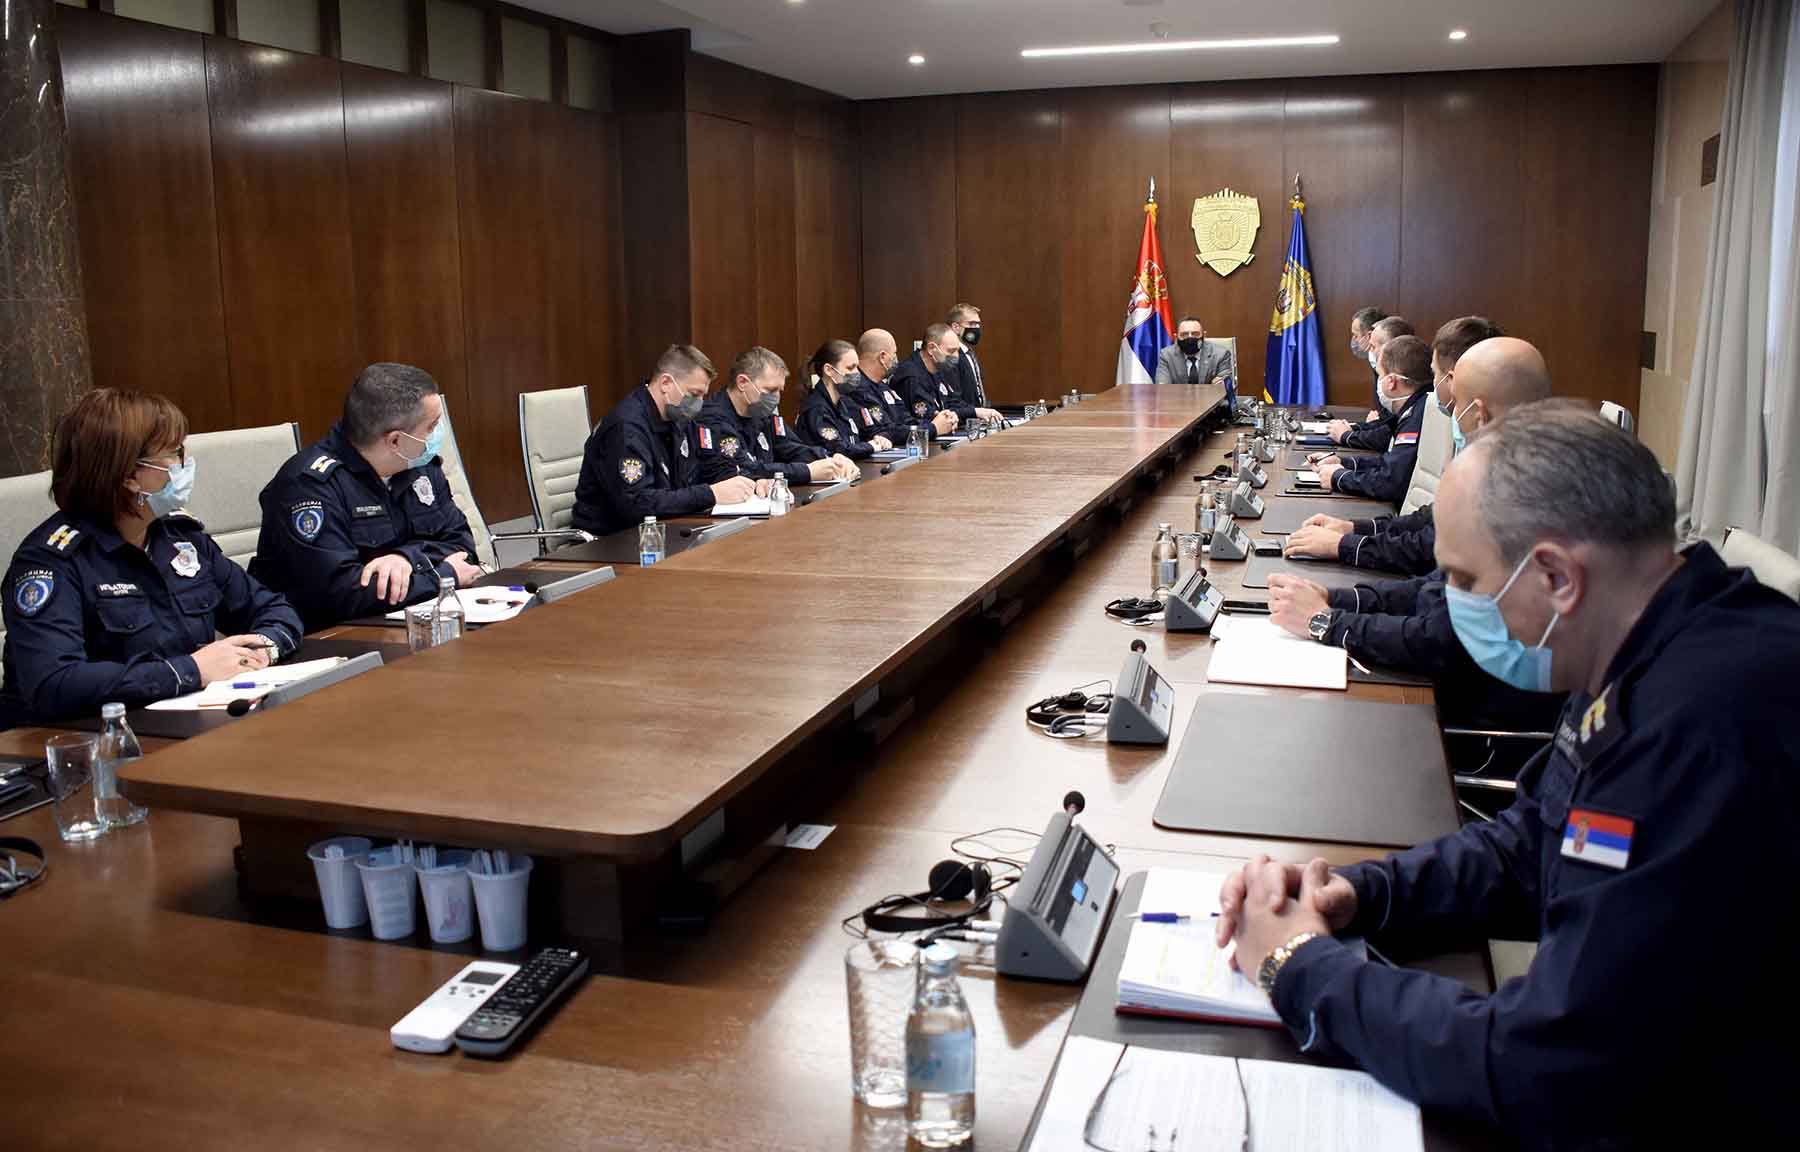 Ministar Vulin se sastao sa rukovodiocima Uprave policije i Interventne jedinice